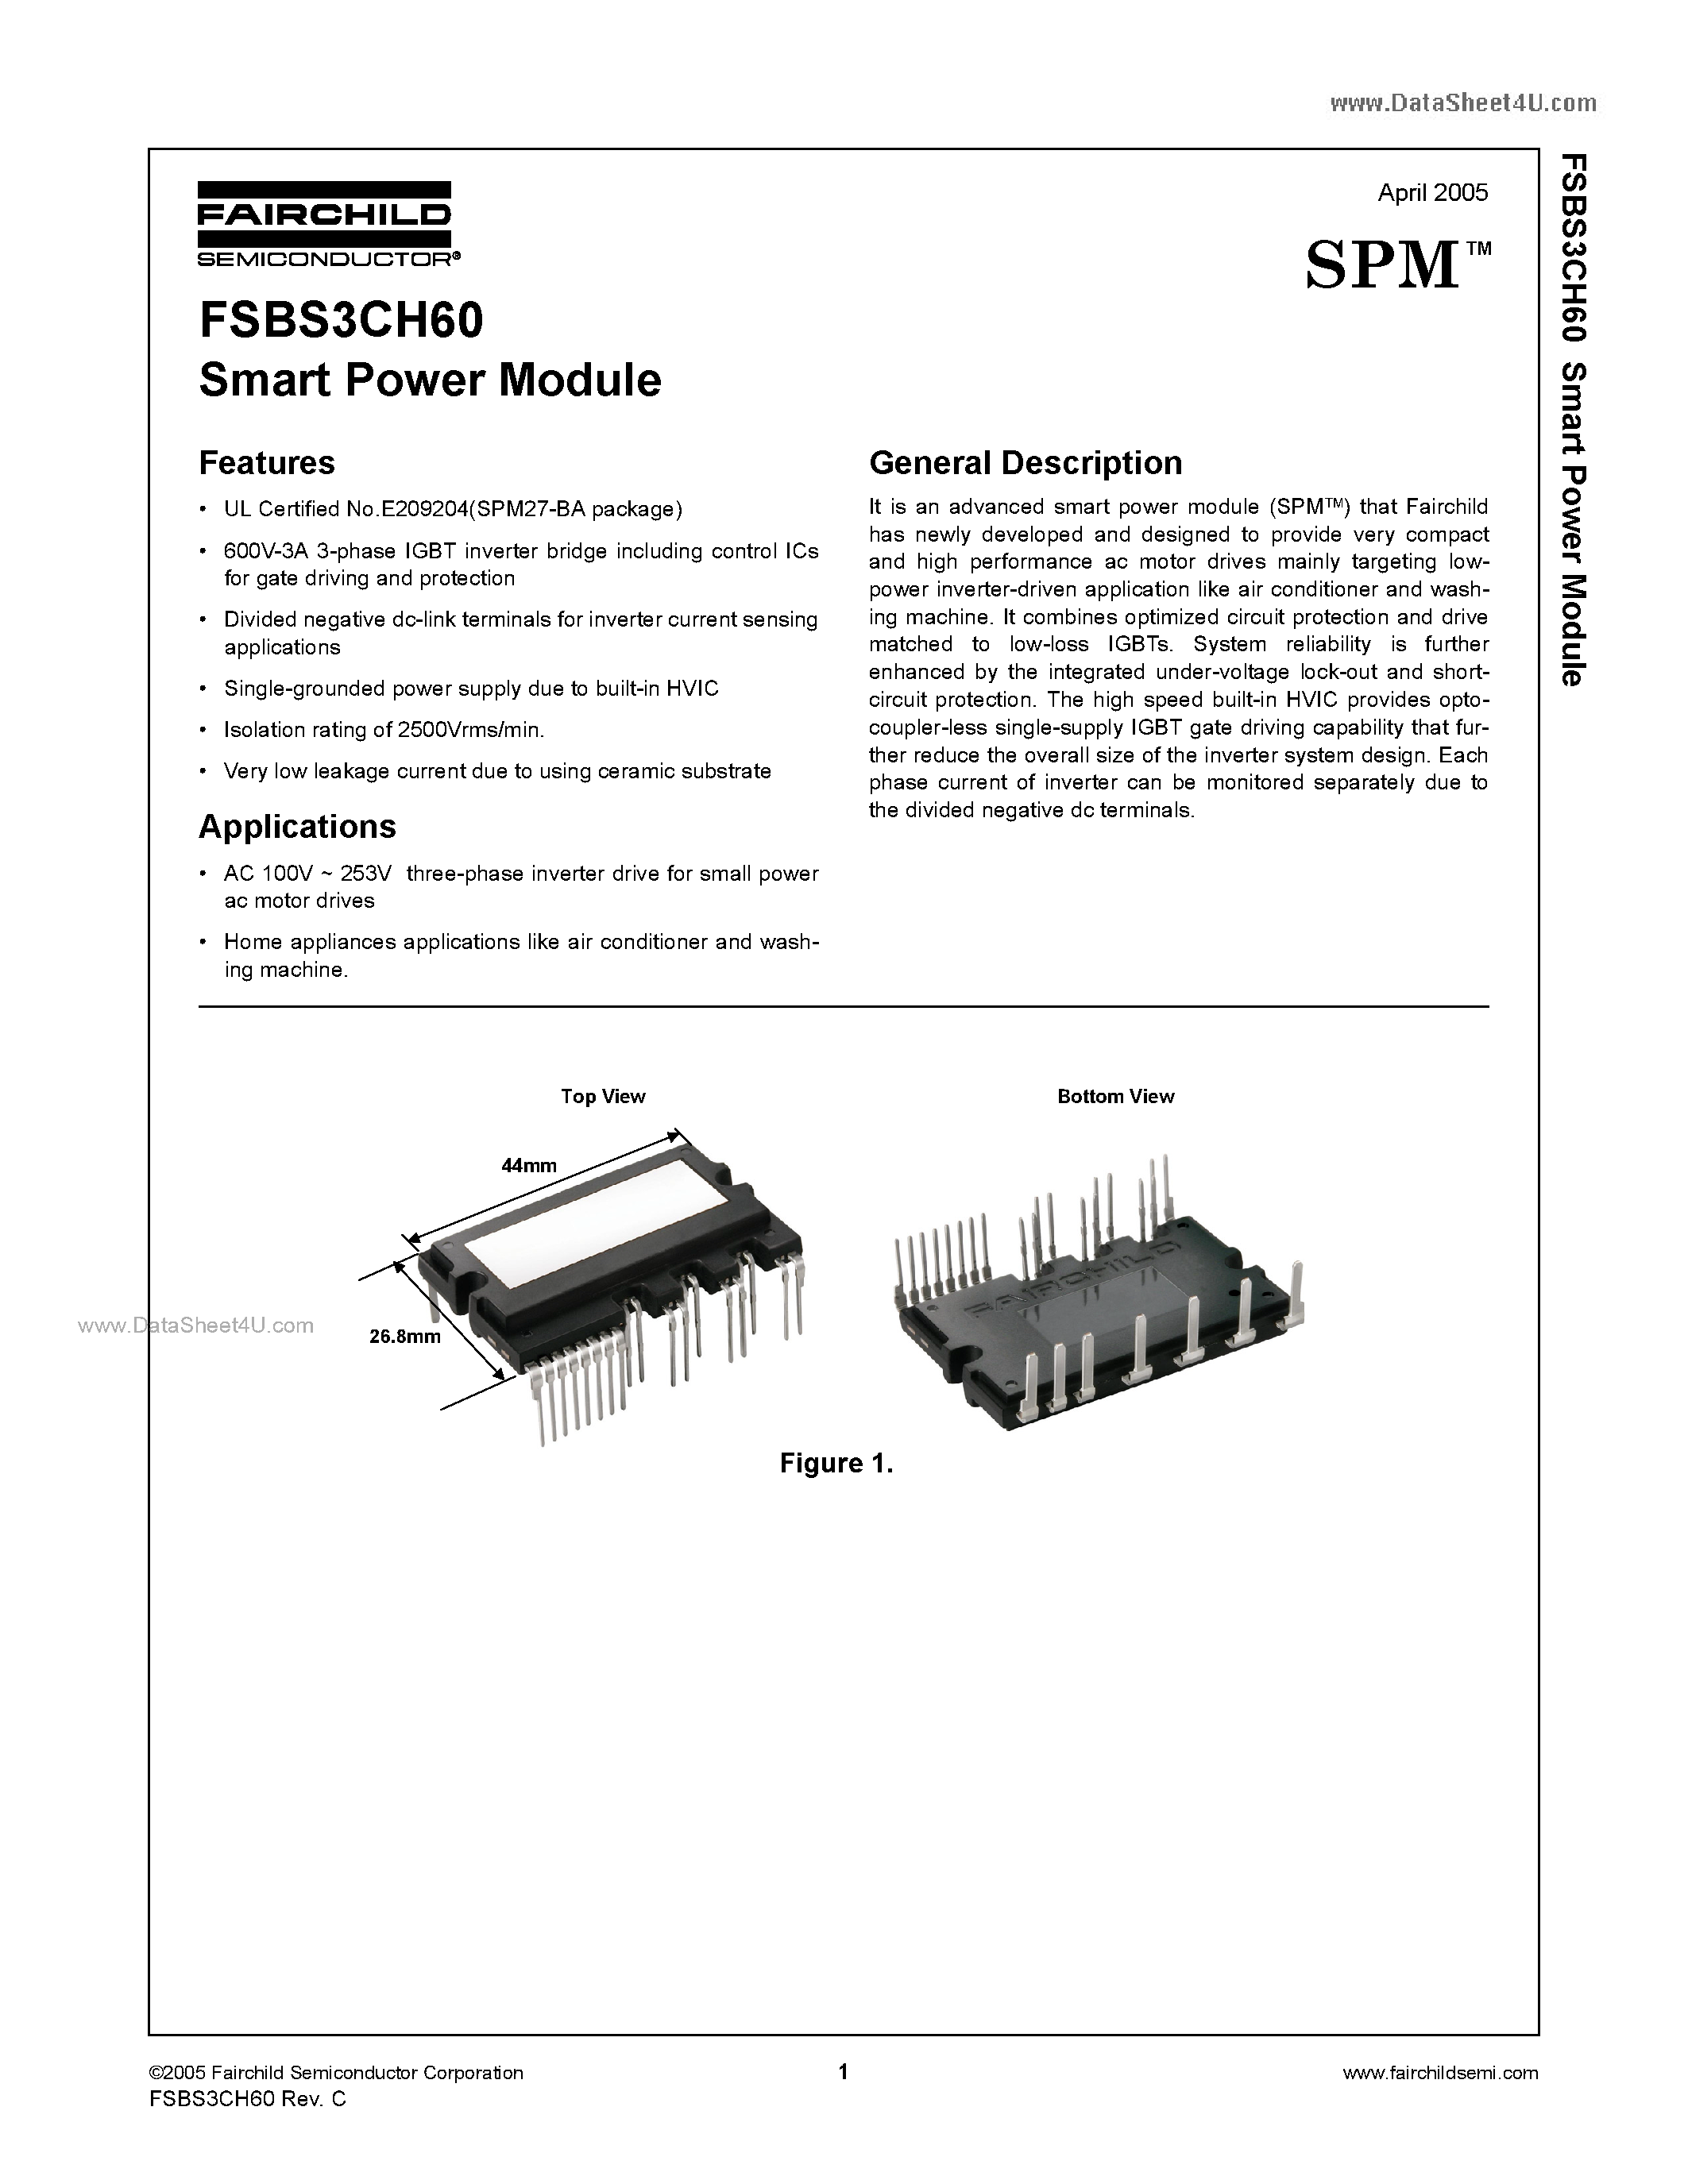 Даташит FSBS3CH60 - Smart Power Module страница 1